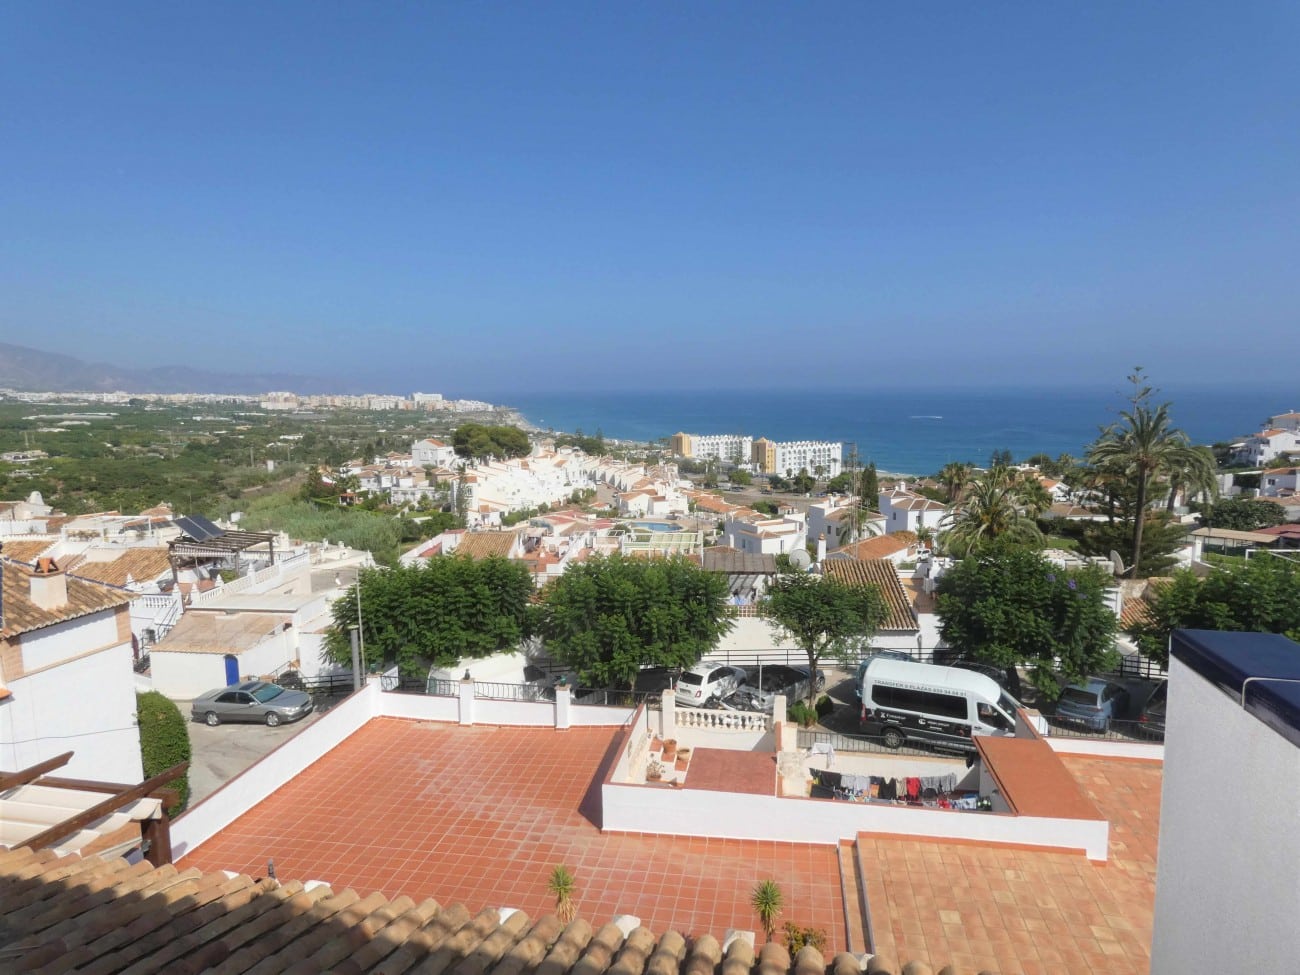 Zeezicht van resale huis in Nerja in Spanje, gelegen aan de  Costa del Sol-Oost